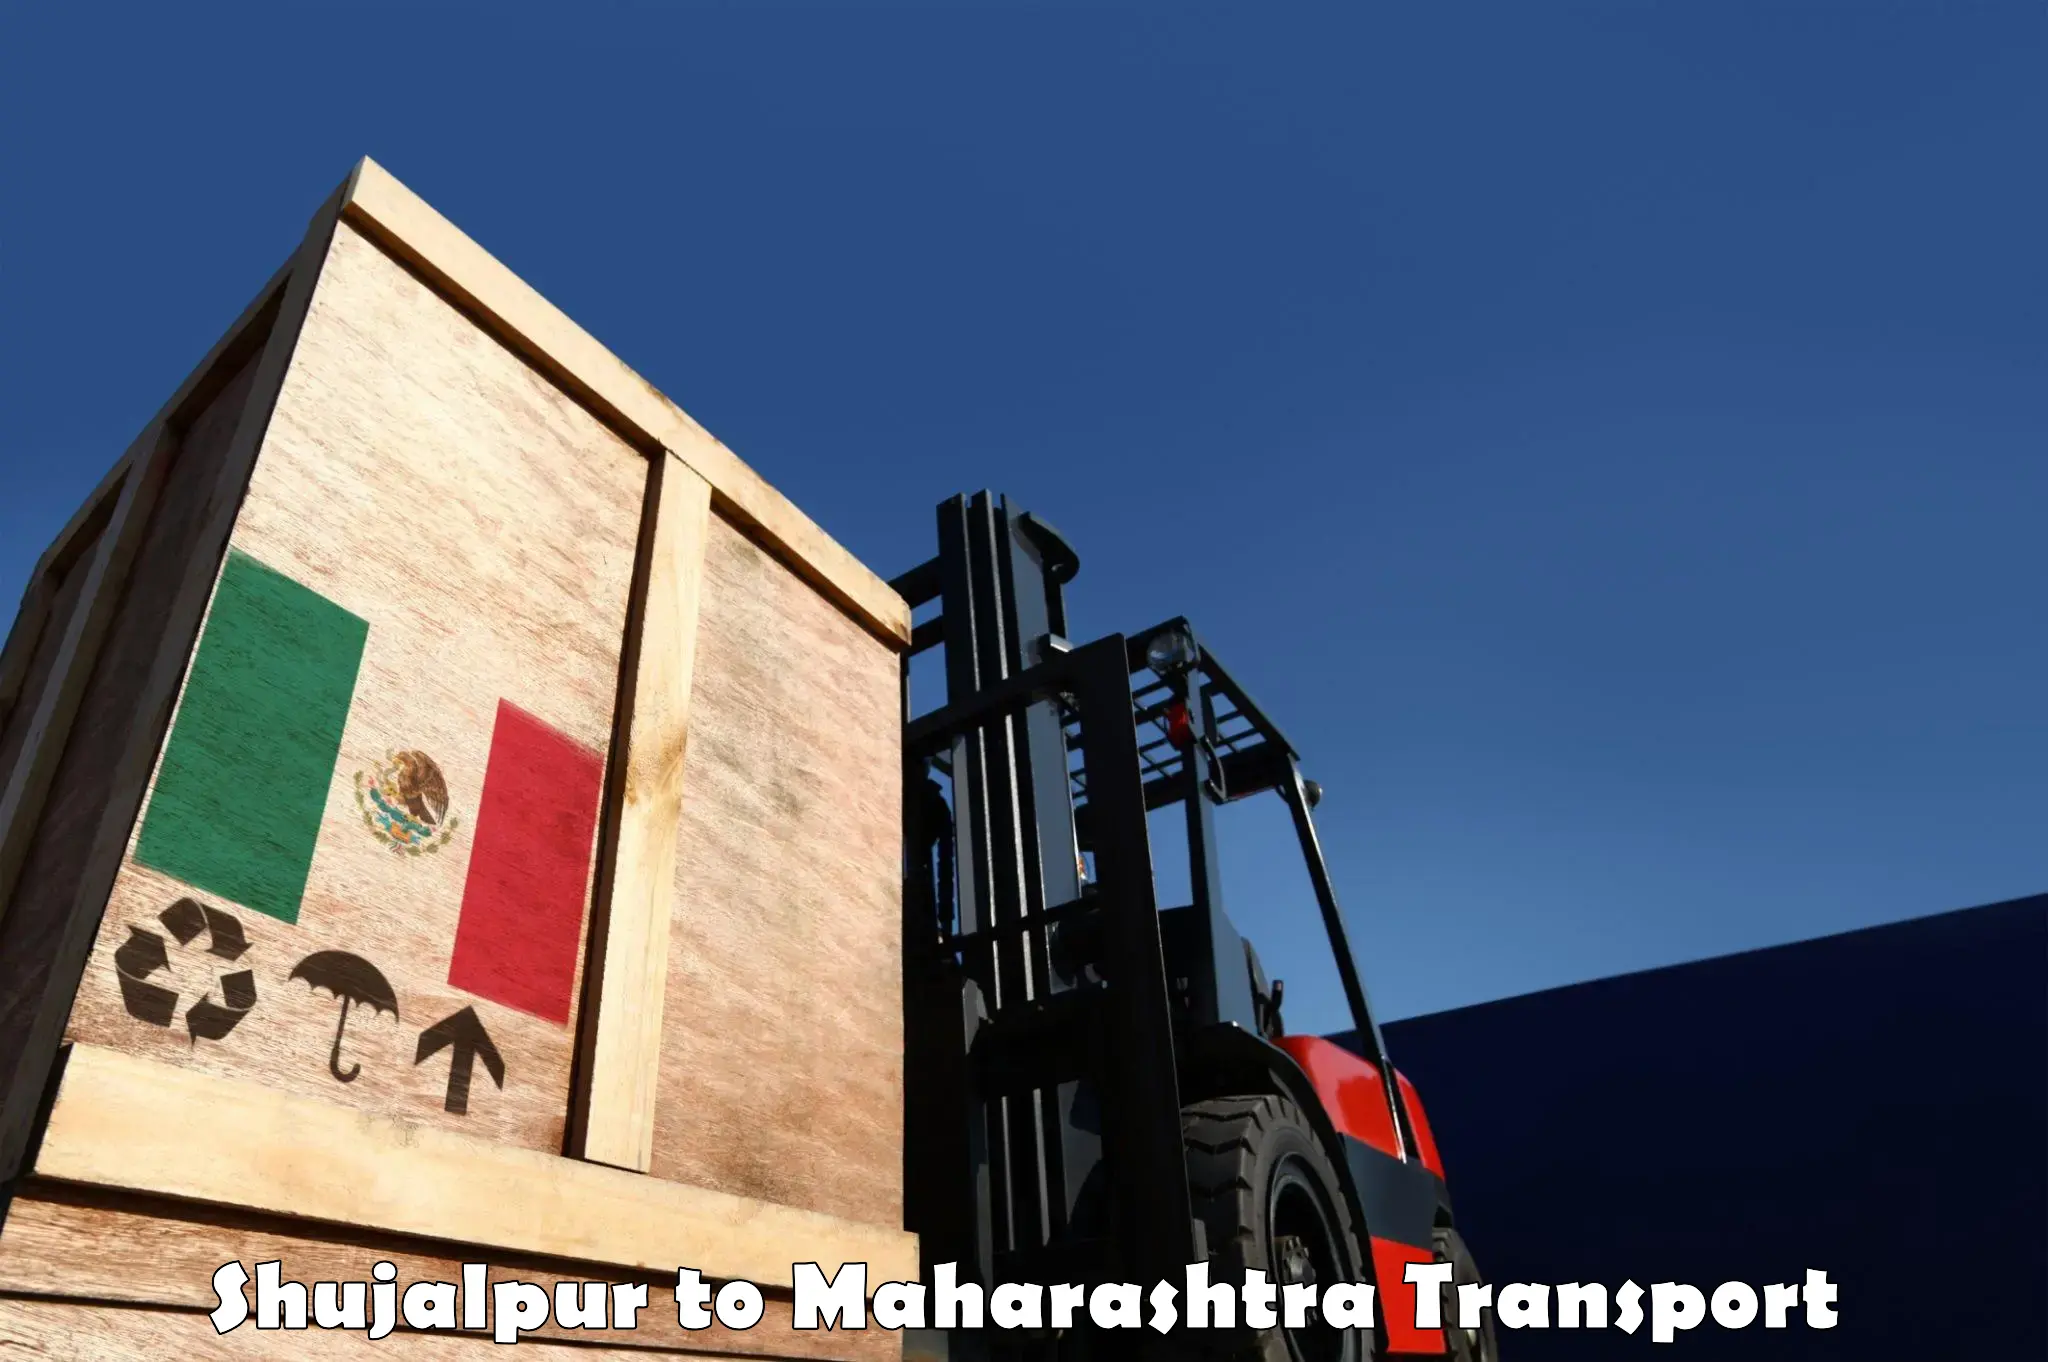 Vehicle transport services Shujalpur to Pandharkawada